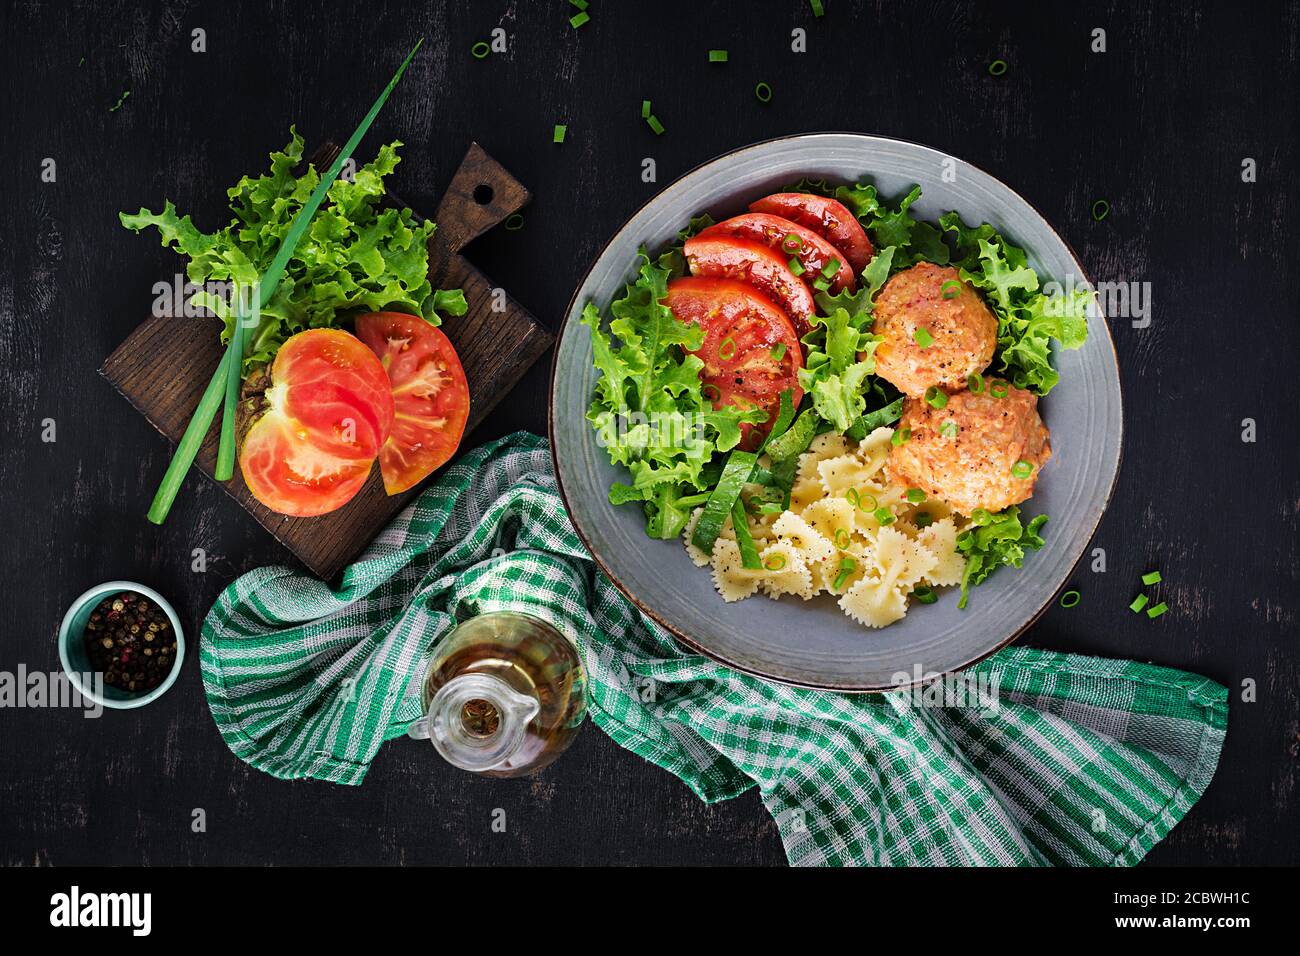 Italienische Pasta. Farfalle mit Fleischbällchen und Salat auf dunklem Hintergrund. Abendessen. Draufsicht, Overhead. Slow Food Konzept Stockfoto